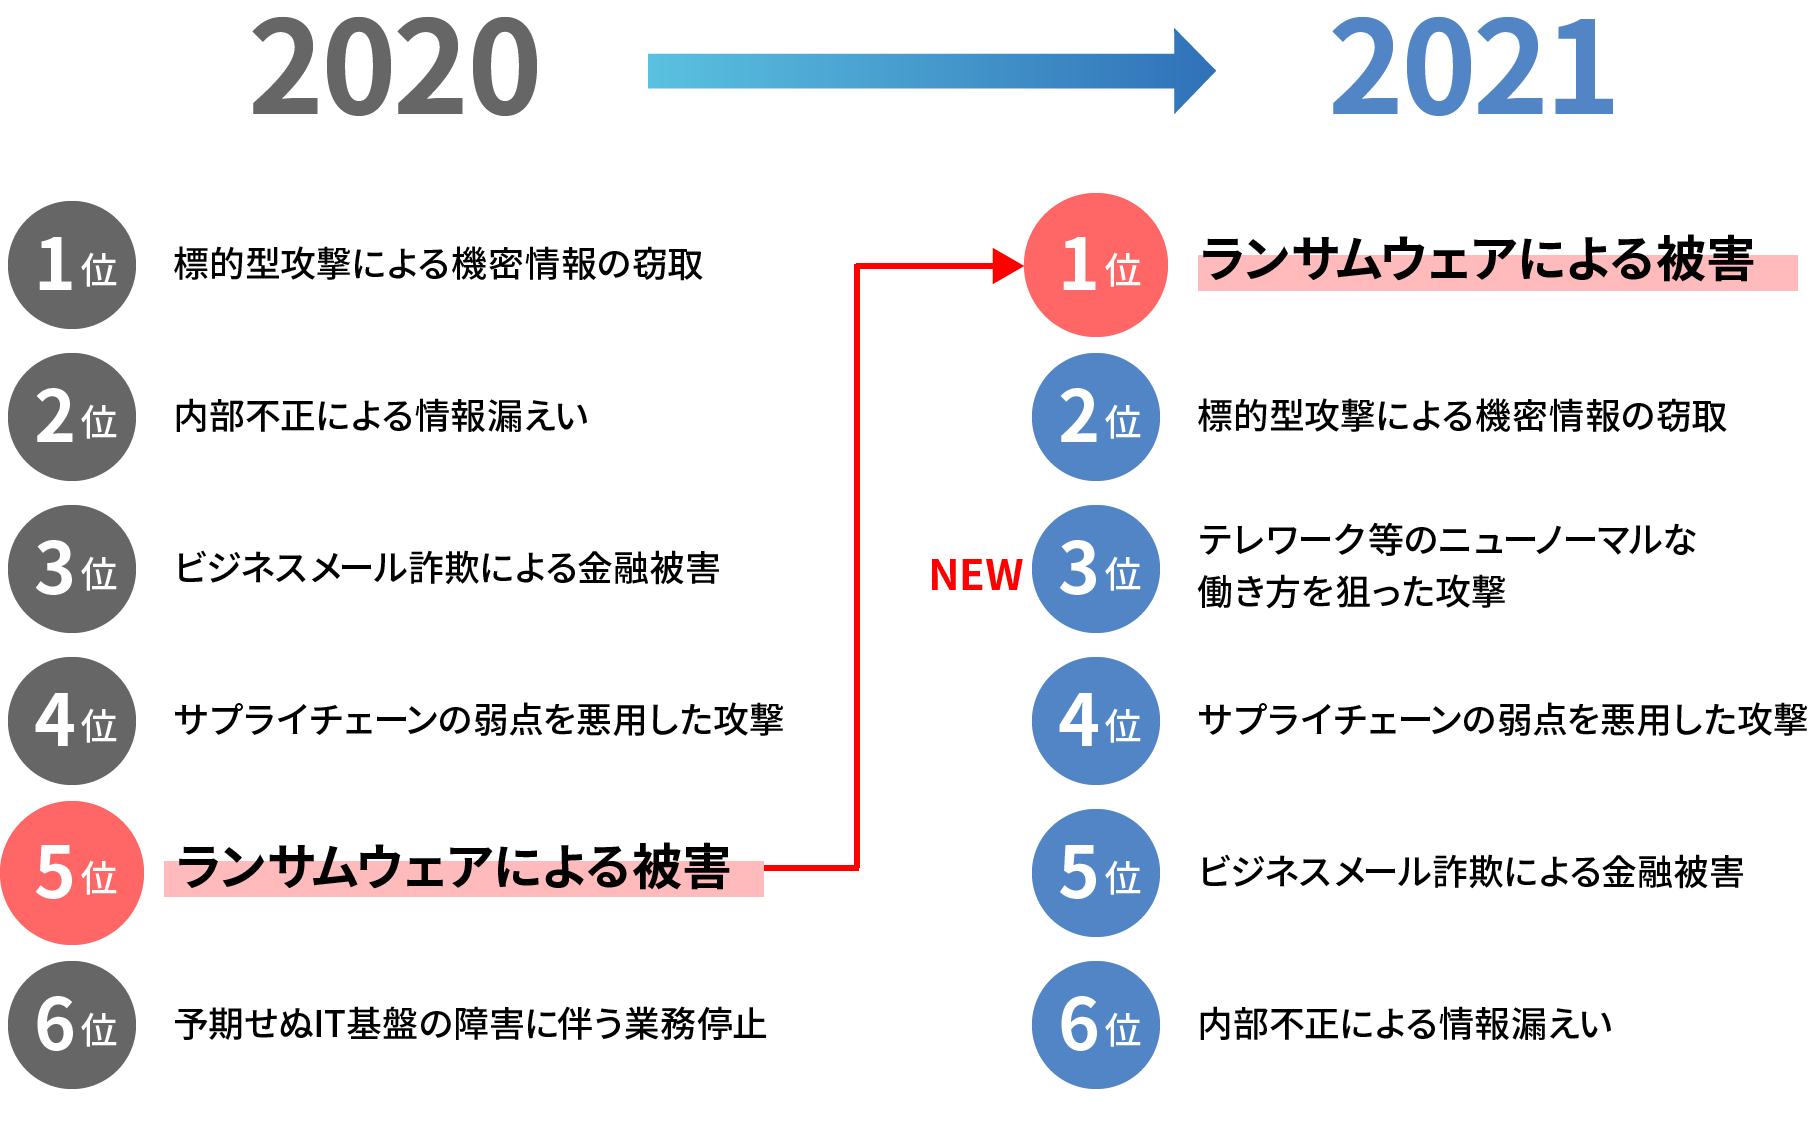 2020年から2021年へ変化するサイバー攻撃の種類